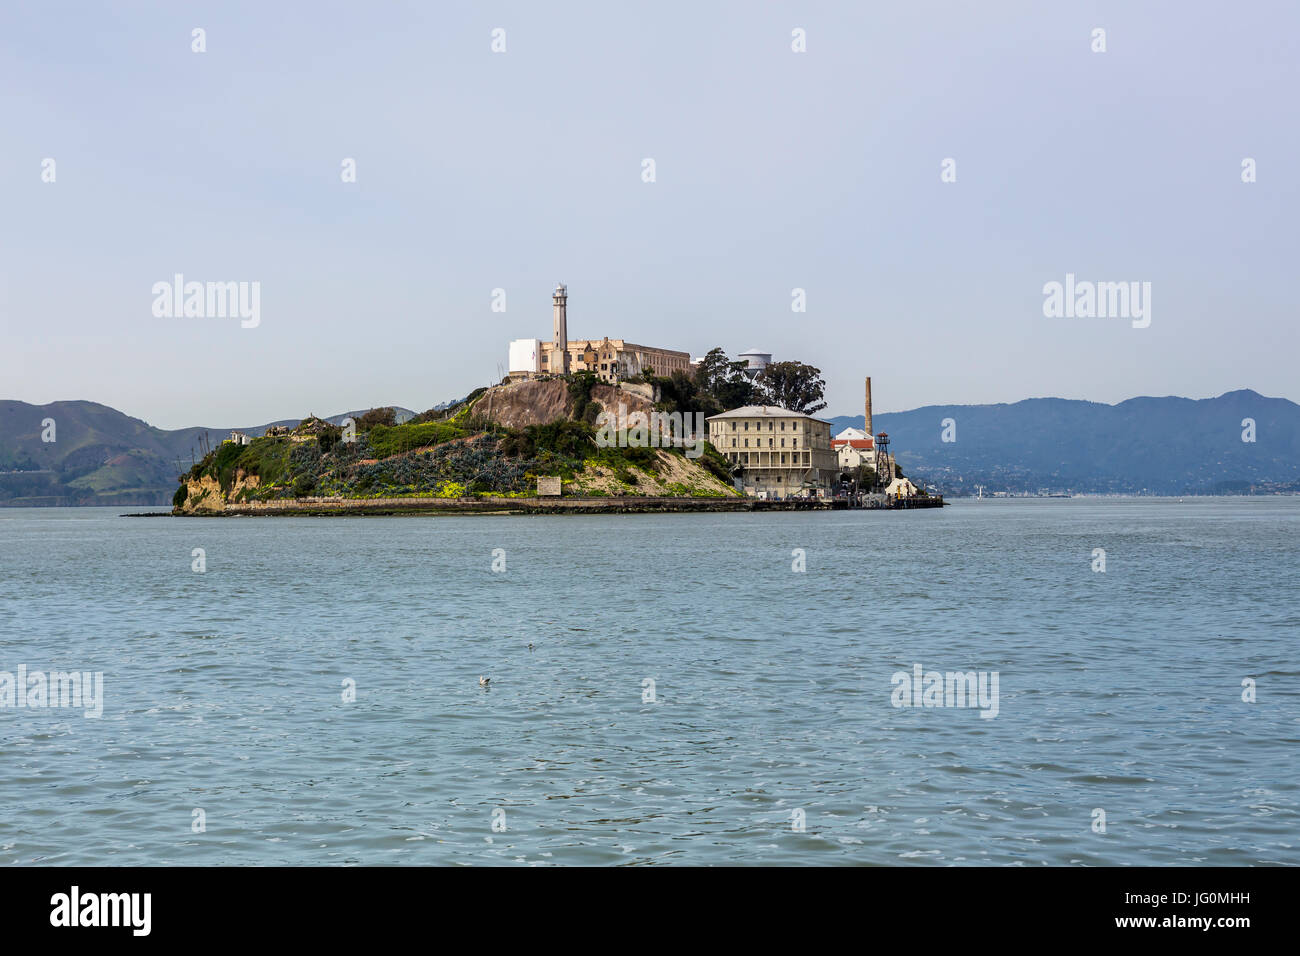 La prison d'Alcatraz, prison, prison militaire, prison fédérale, l'île d'Alcatraz, San Francisco Bay, San Francisco, Californie Banque D'Images